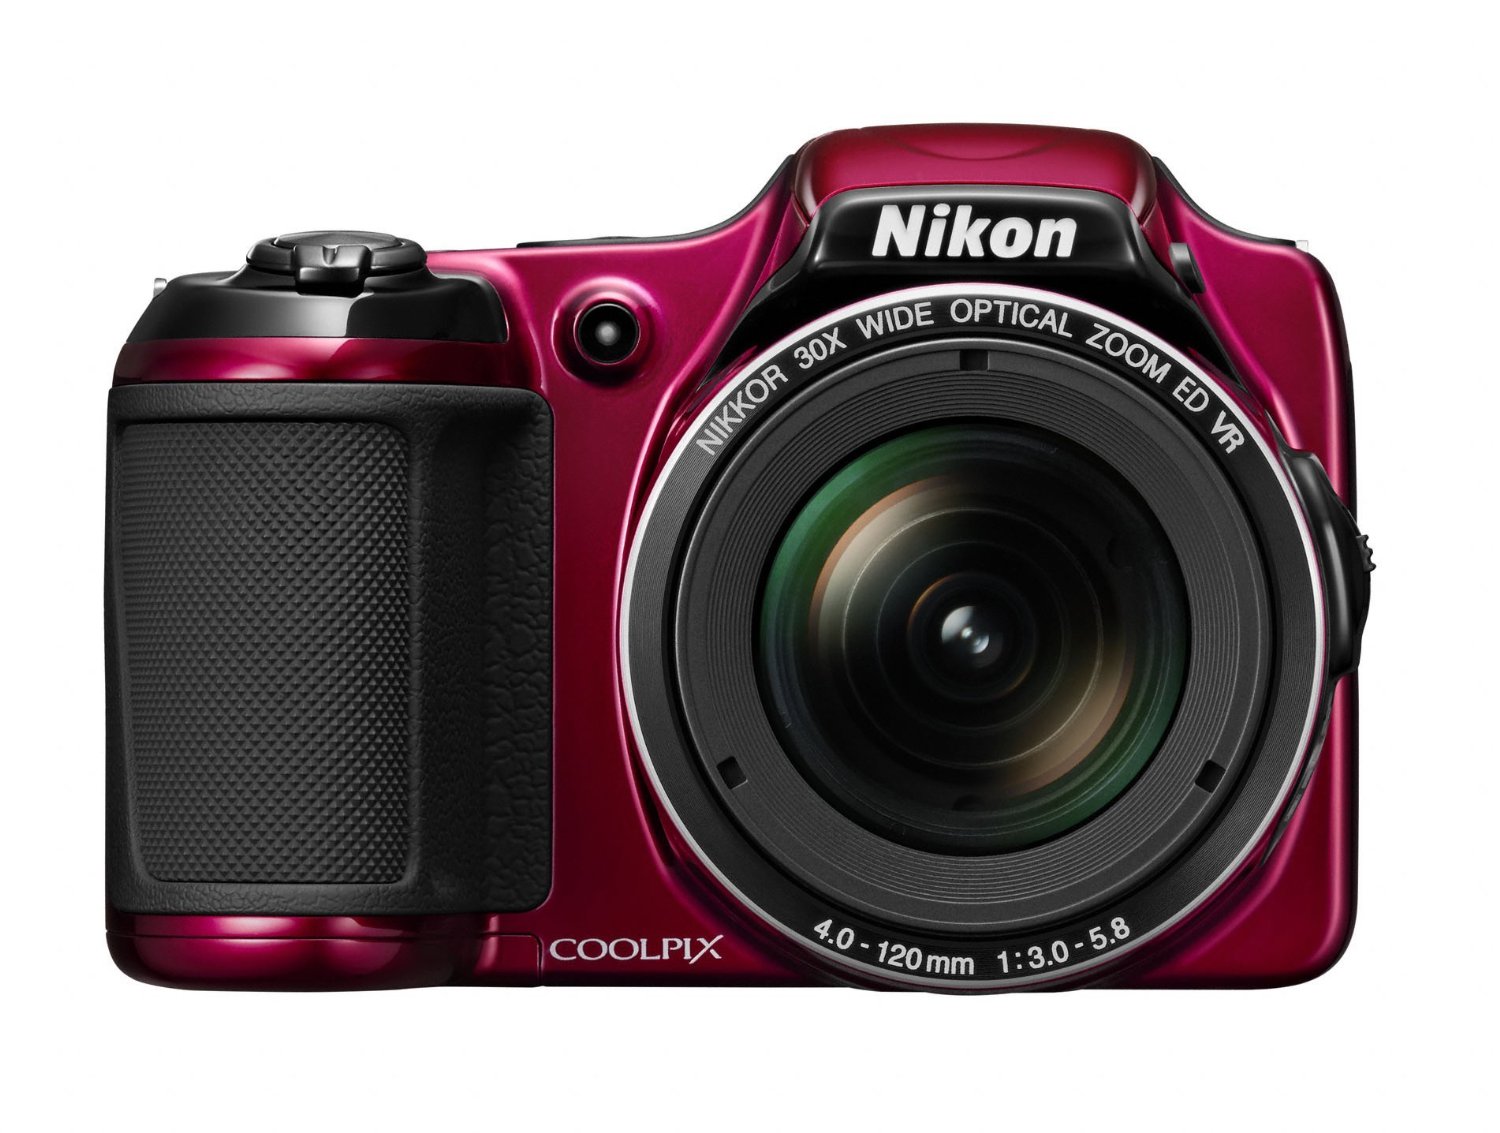 Nikon COOLPIX L820 Digital Camera